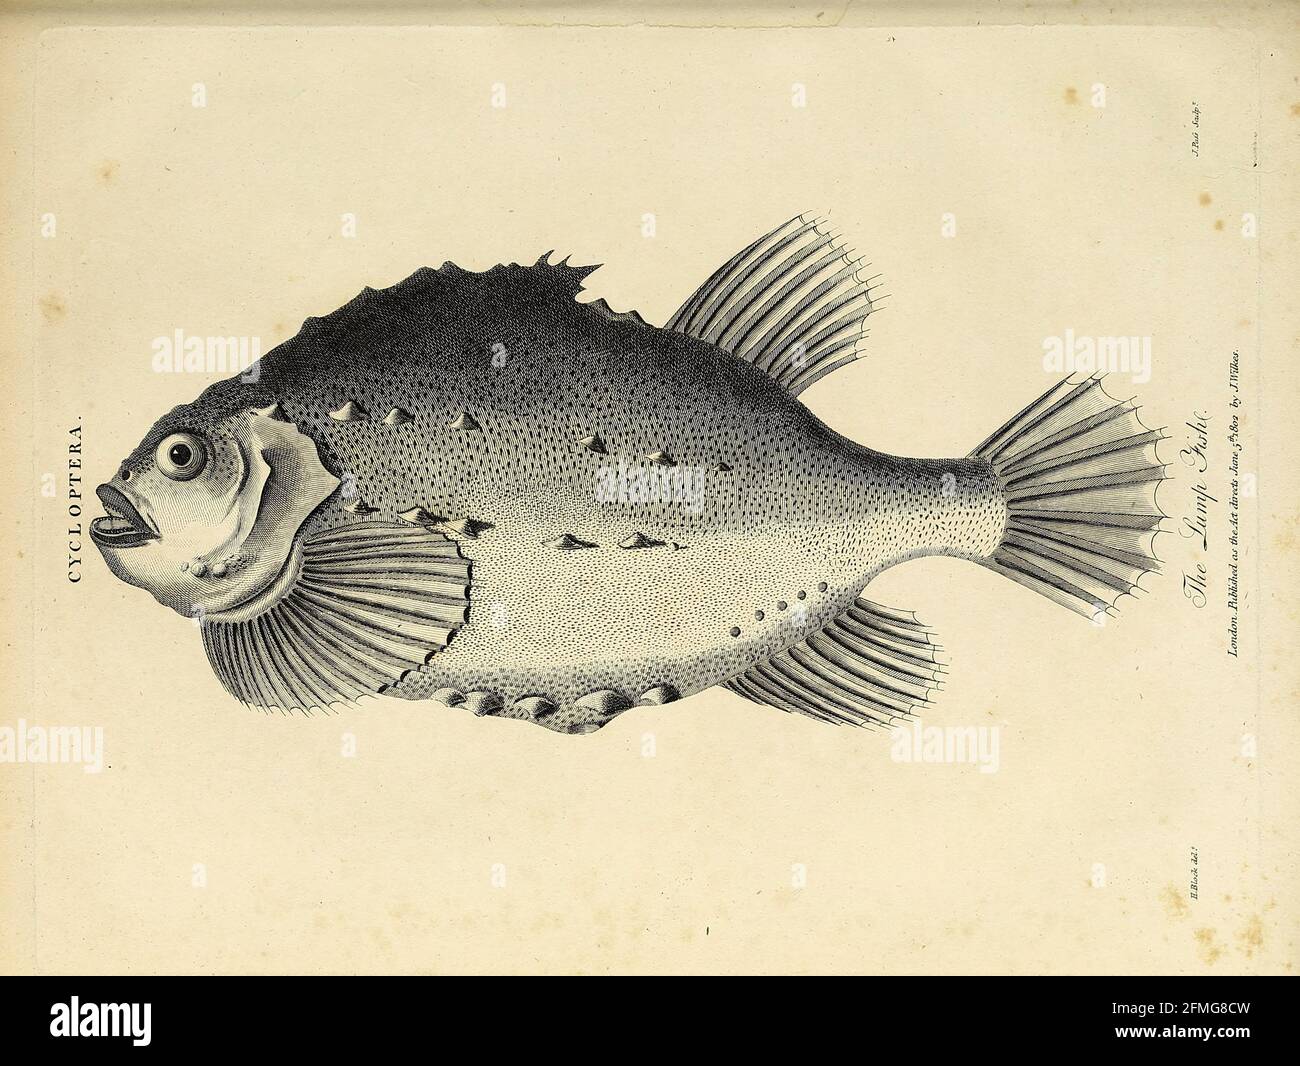 Cycloptera il pesce grumo [Lumpfish] incisione su Copperplate  dell'Enciclopedia Londinensis OR, dizionario universale di arti,